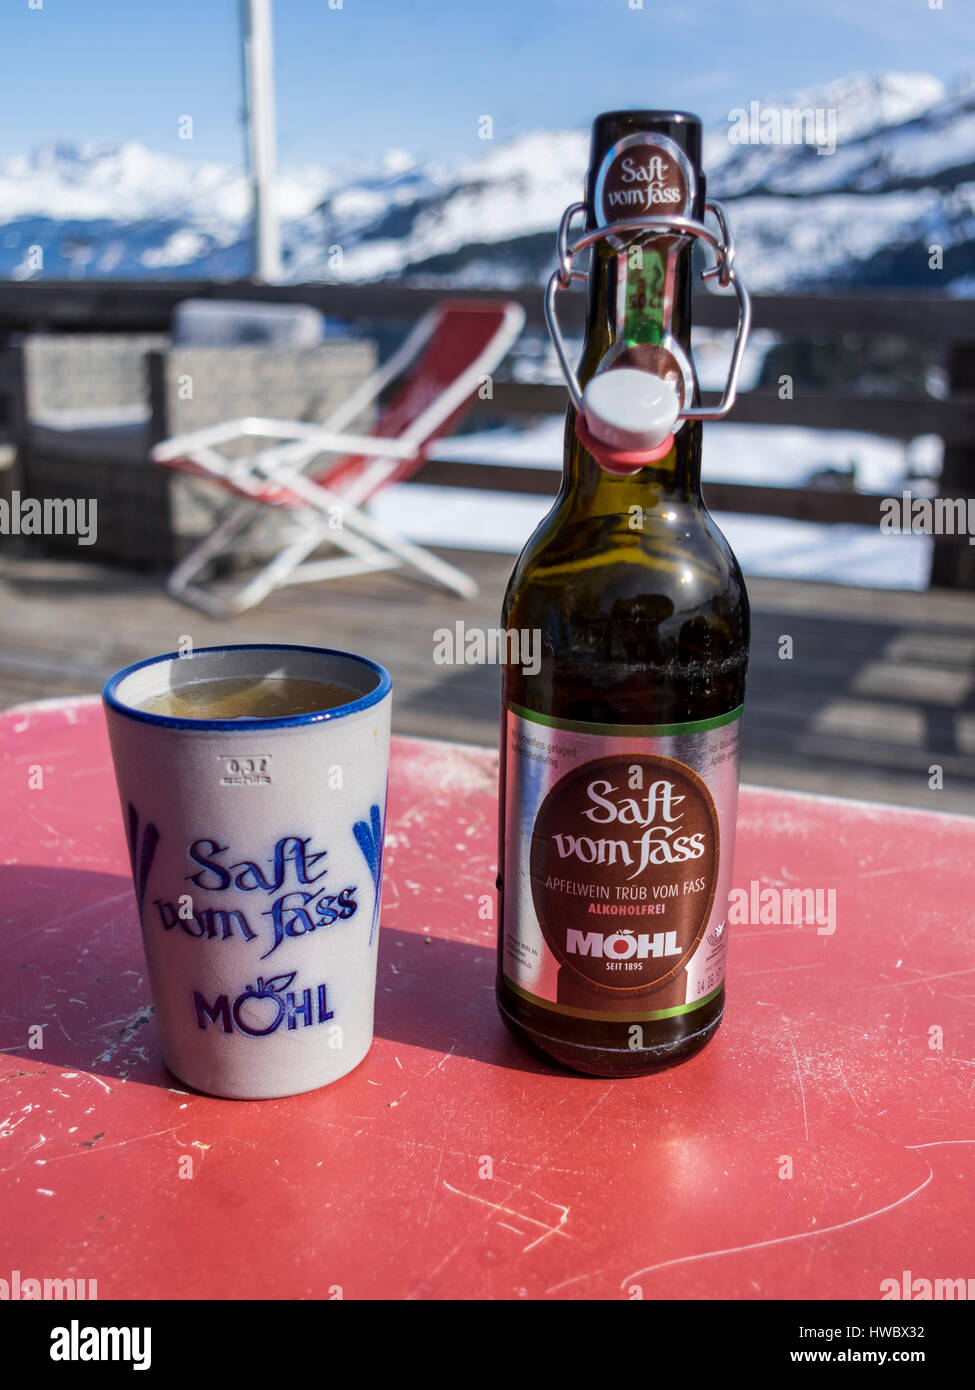 Eine Flasche alkoholfreien Möhl Apfelwein "Saft Vom Fass", einem  traditionellen Schweizer Apfelwein mit einem Keramik-Becher. Alpine  Hintergrund Stockfotografie - Alamy